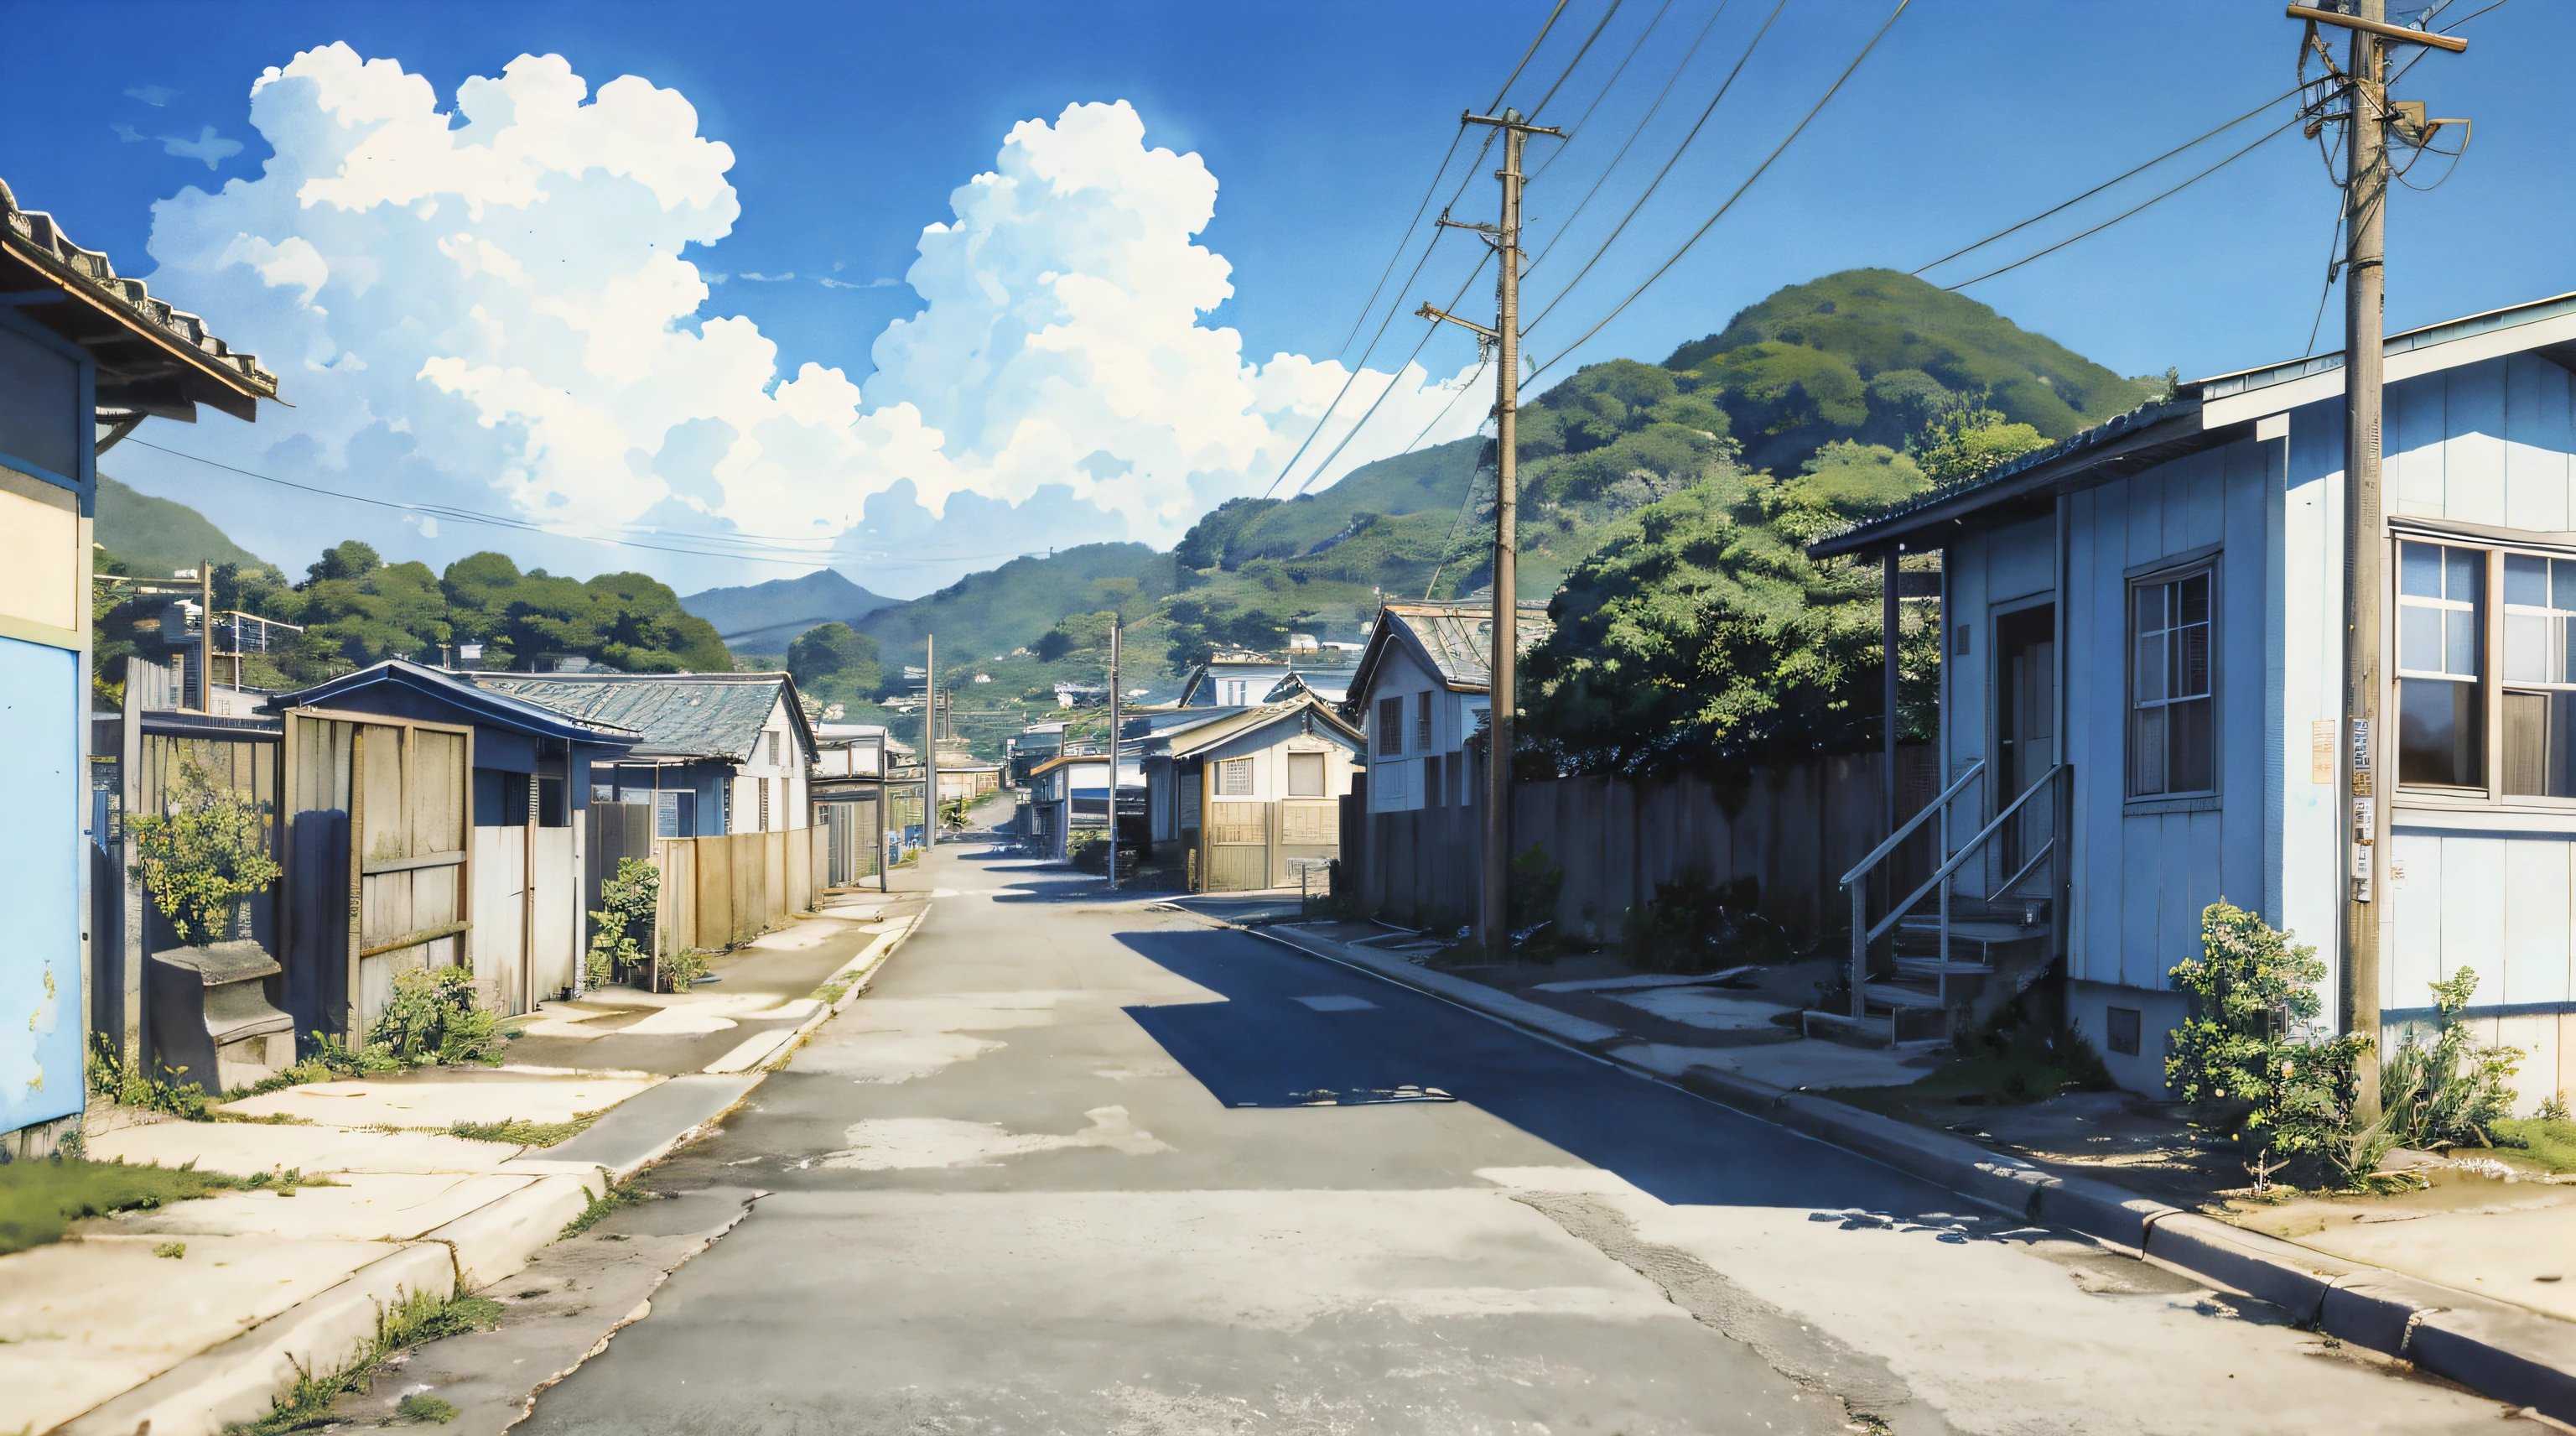 el cielo es azul,al estilo de la estética lo-fi,kishin shinoyama,acuarela,escenas costeras,Escenas de la vida rural,escenas coloridas en la acera, retrocore, sō saku hanga.